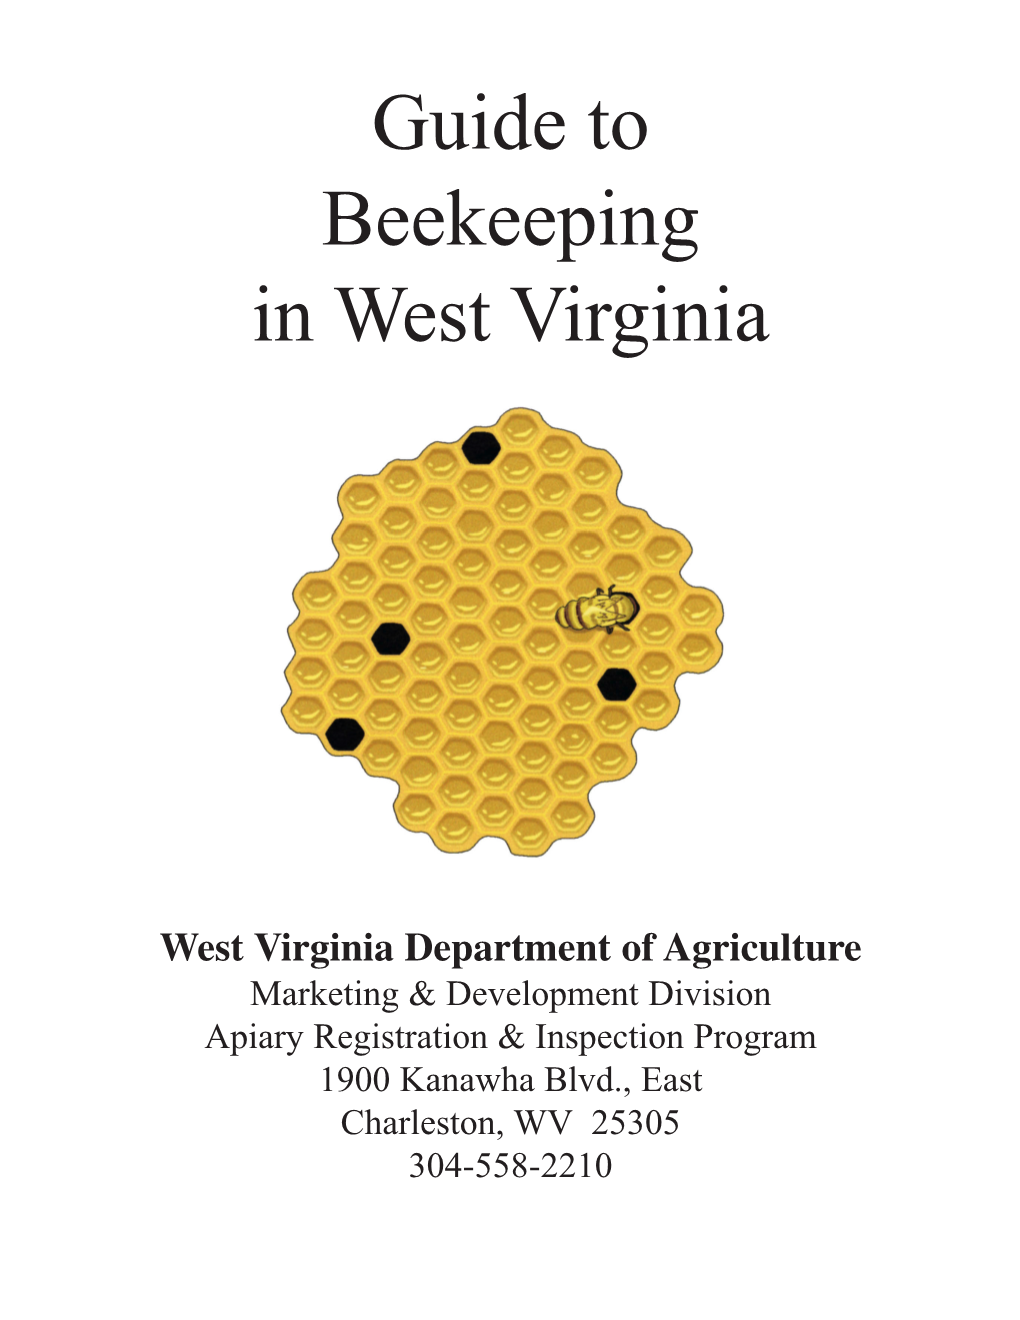 Beekeeping in West Virginia